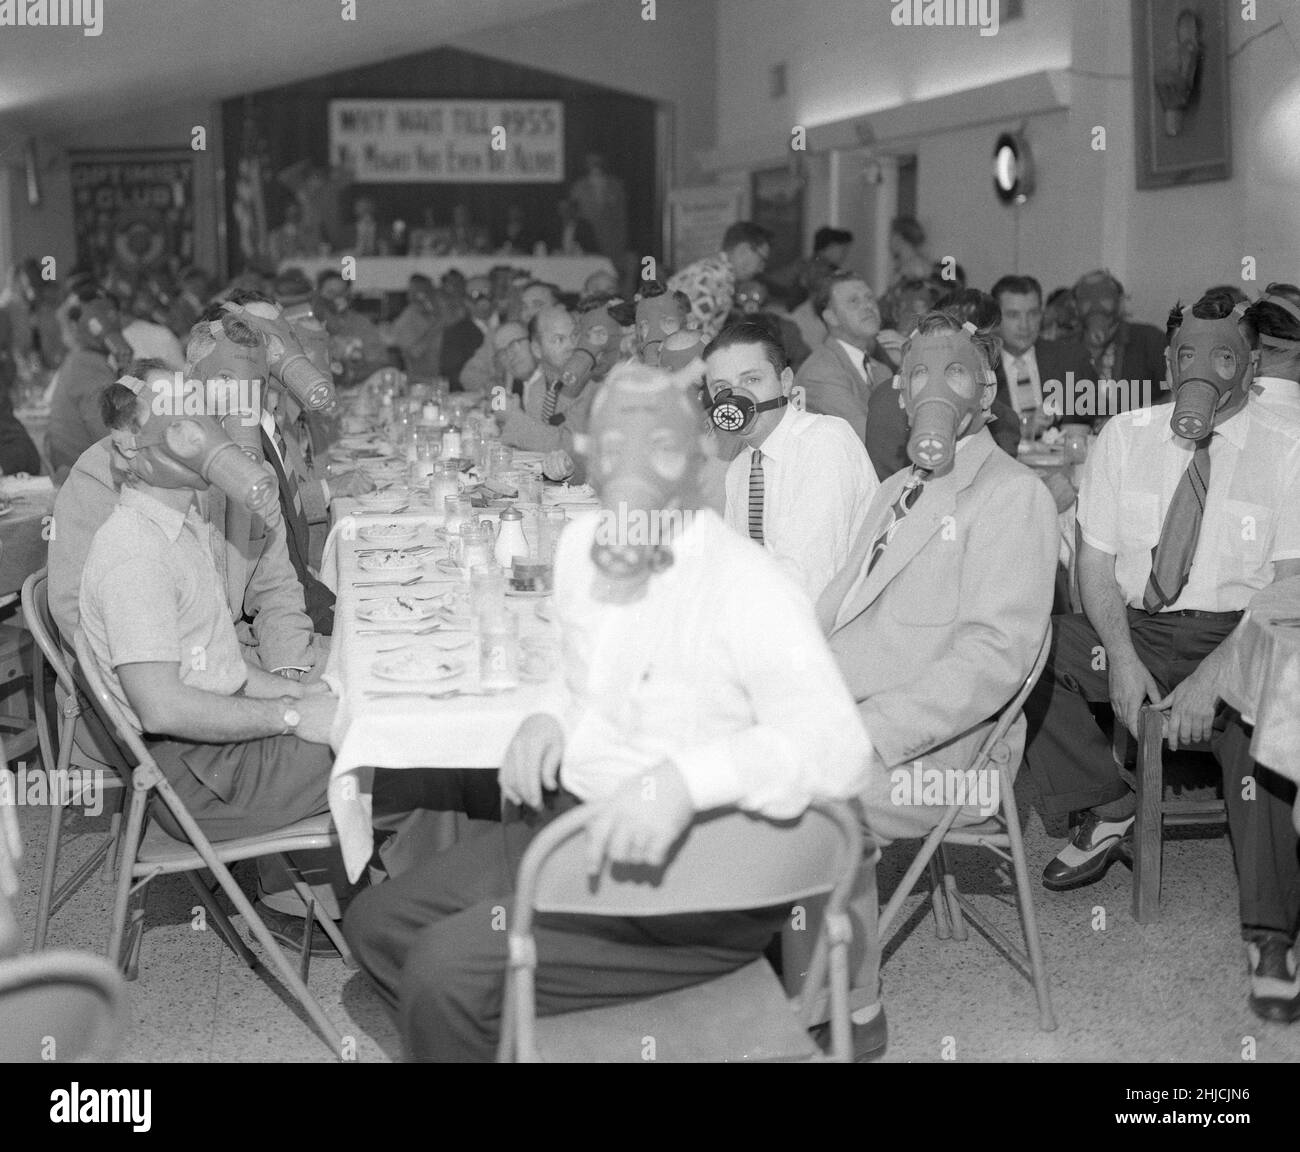 Highland Park Optimist Club portant des masques à gaz de smog lors d'un banquet, vers 1954.Nord-est de Los Angeles, Californie du Sud. Banque D'Images